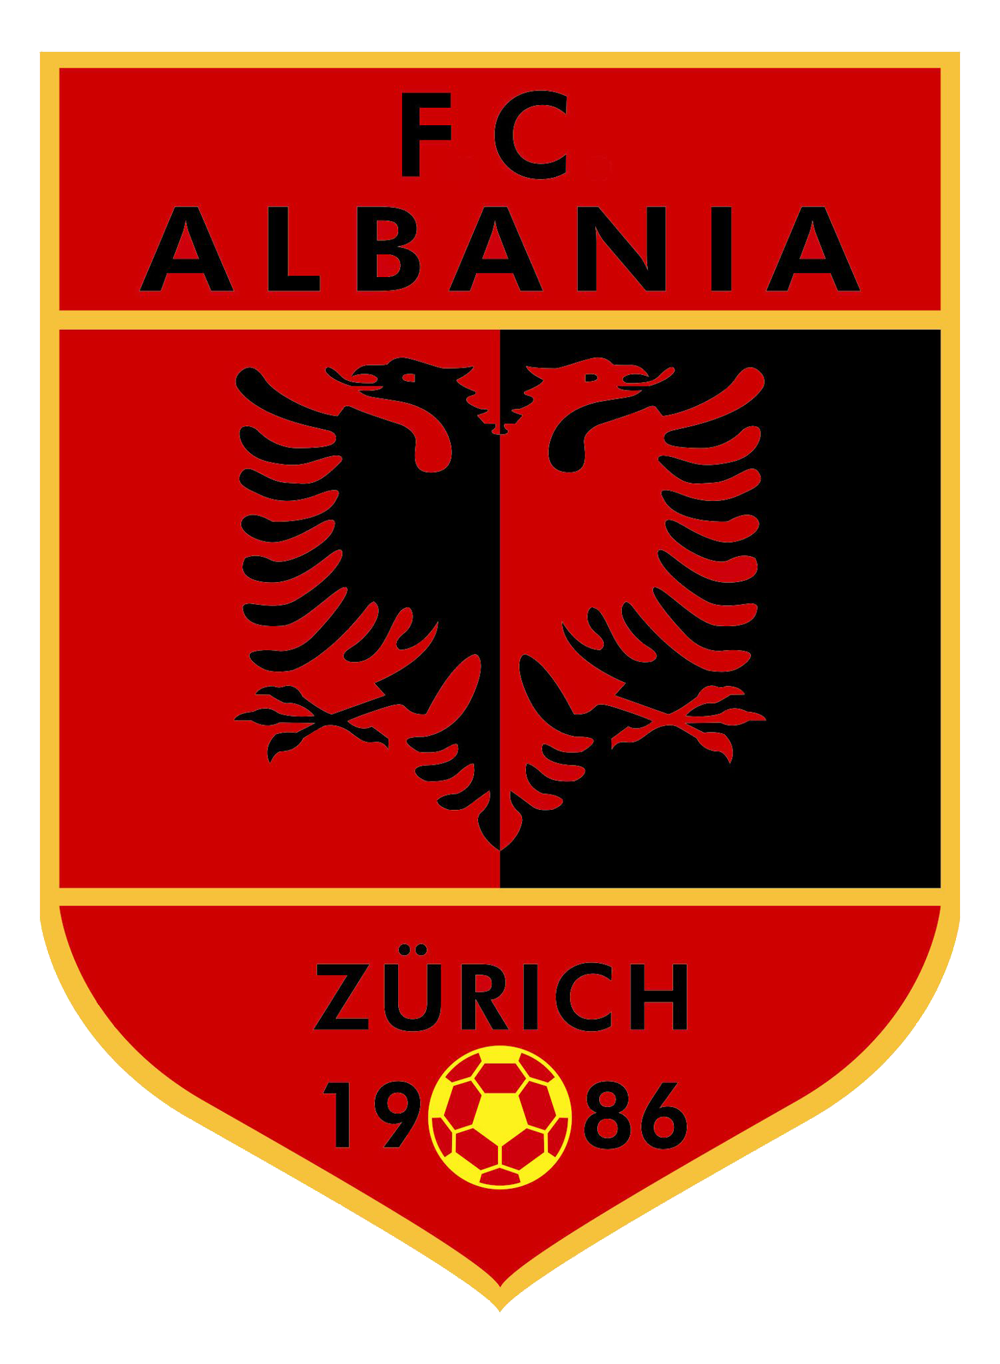 FC Albania Zurich